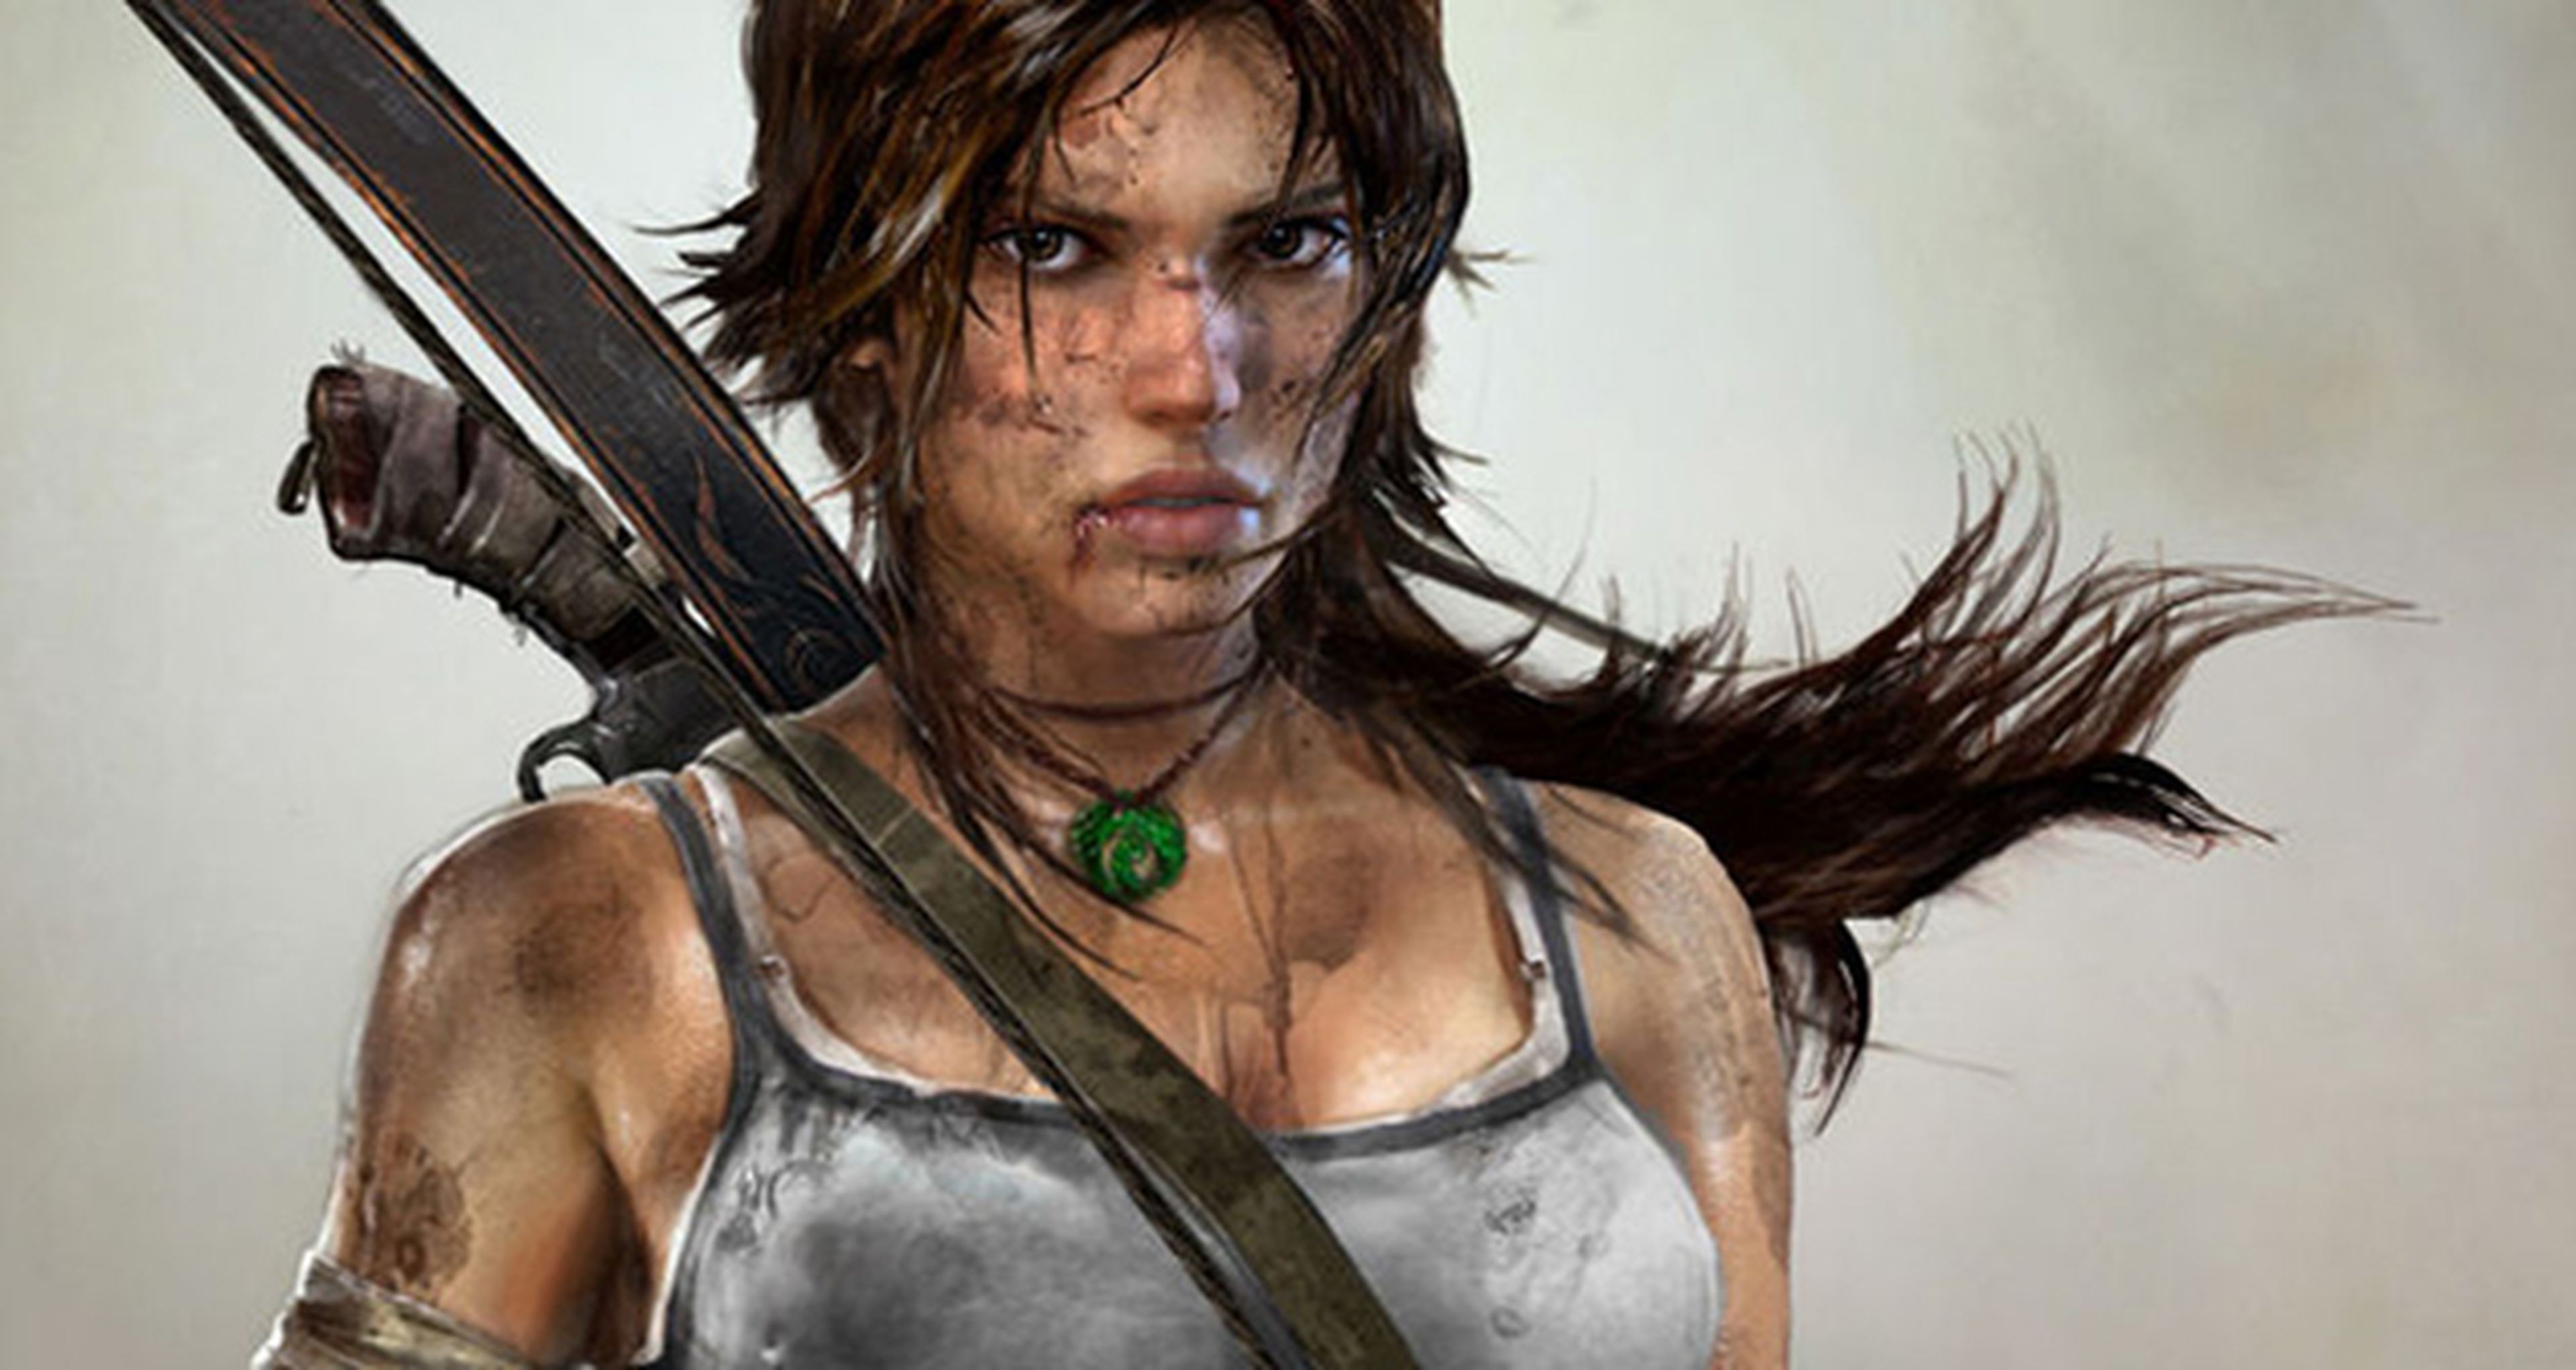 Square confirma la versión next gen de Tomb Raider